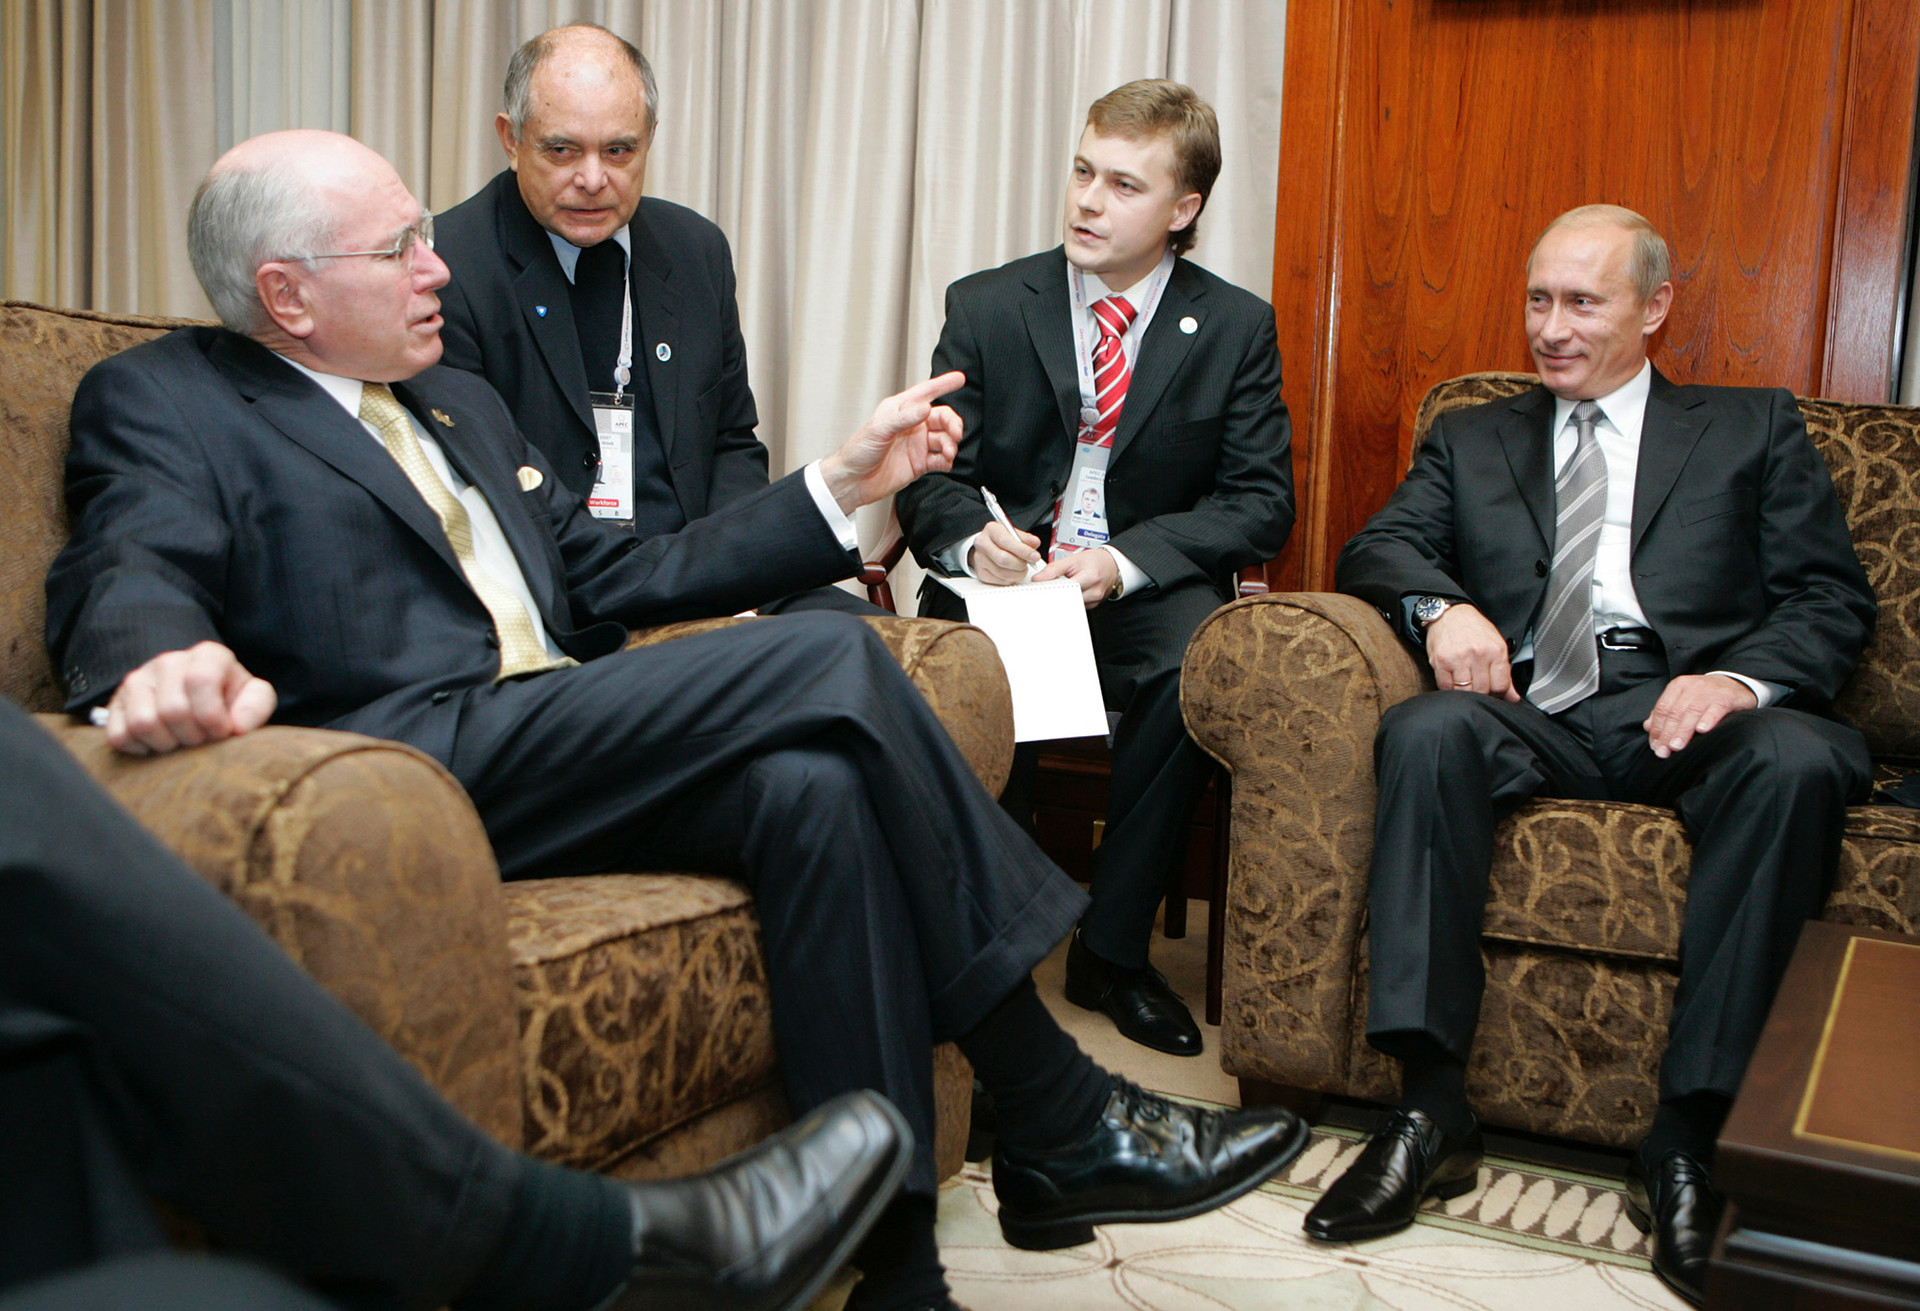 Le premier ministre australien John Winston Howard (à gauche) et le président russe Vladimir Poutine (à droite) en septembre 2007.